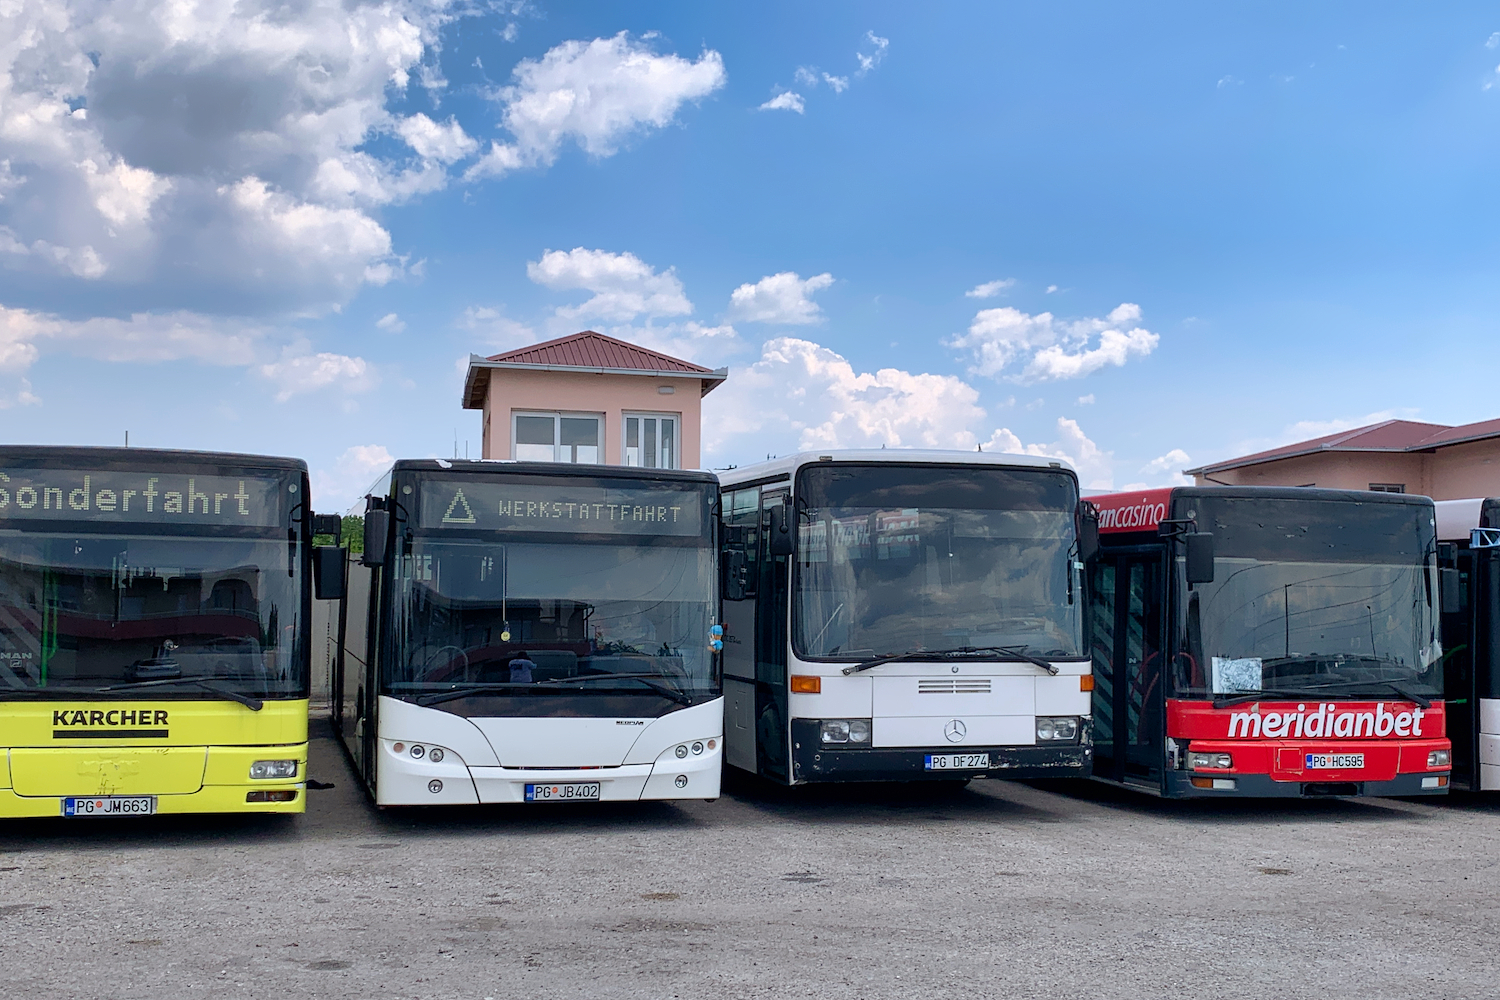 Podgorica, MAN A21 NL**3 č. PG JM663; Podgorica, Neoplan N4516 Centroliner Evolution č. PG JB402; Podgorica, Mercedes-Benz O408 č. PG DF274; Podgorica, MAN A21 NL**3 č. PG HC595